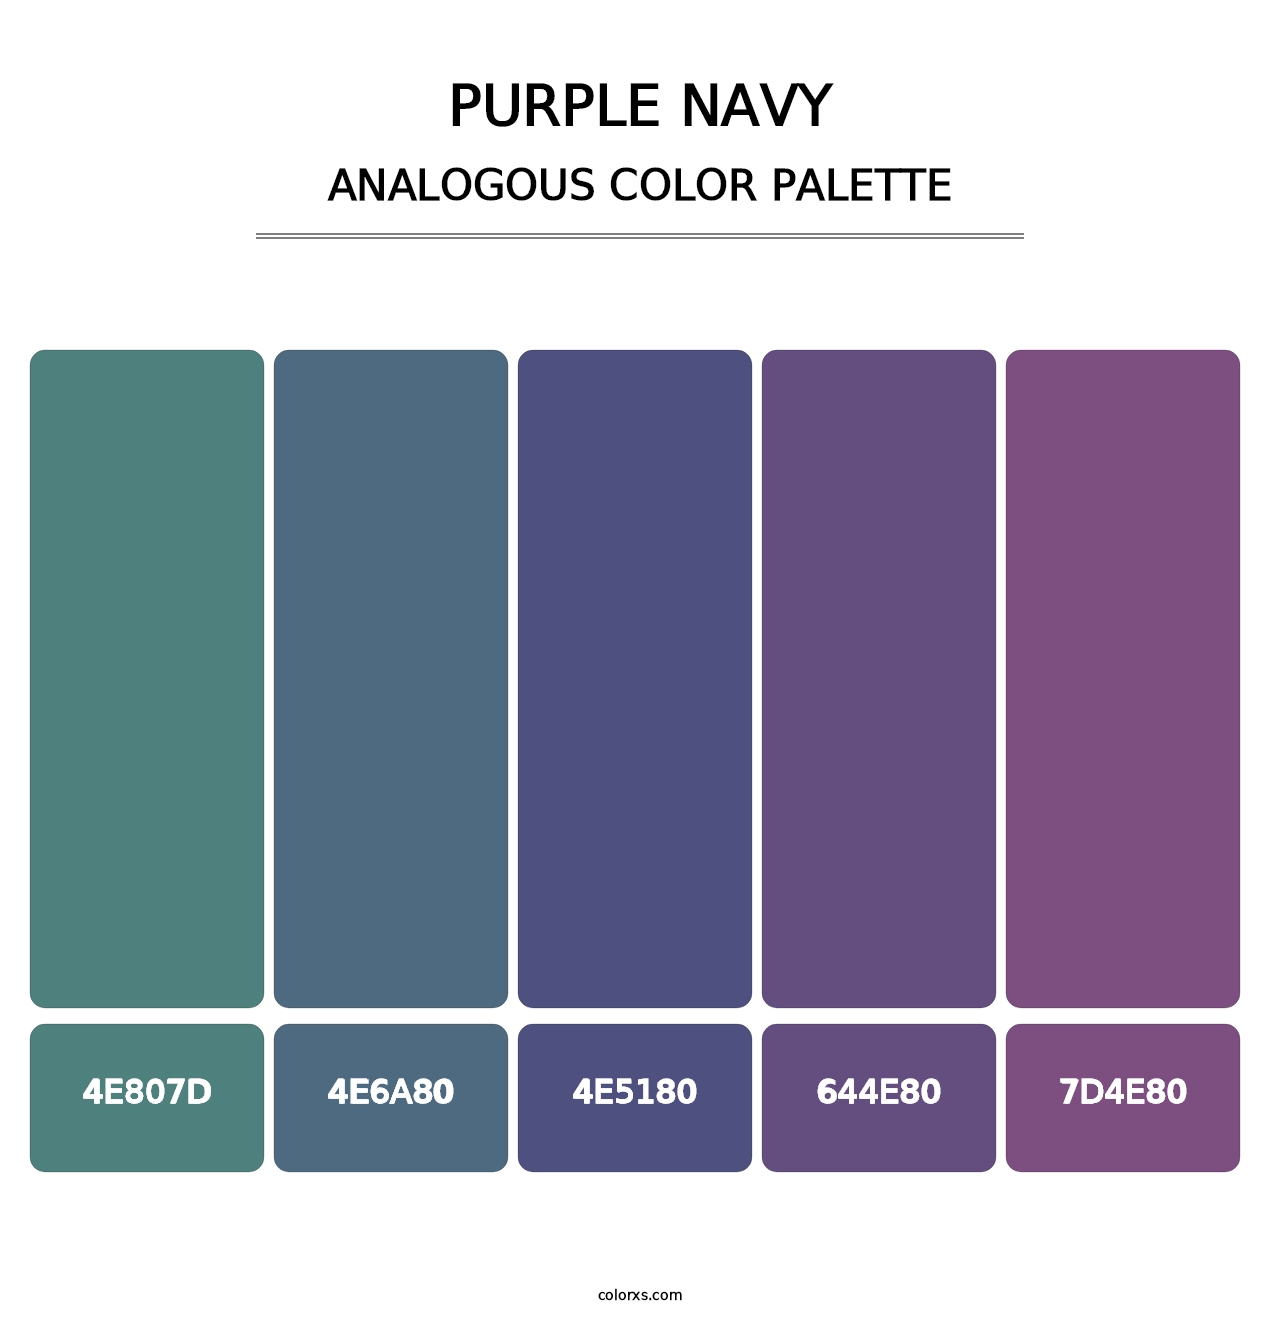 Purple Navy - Analogous Color Palette